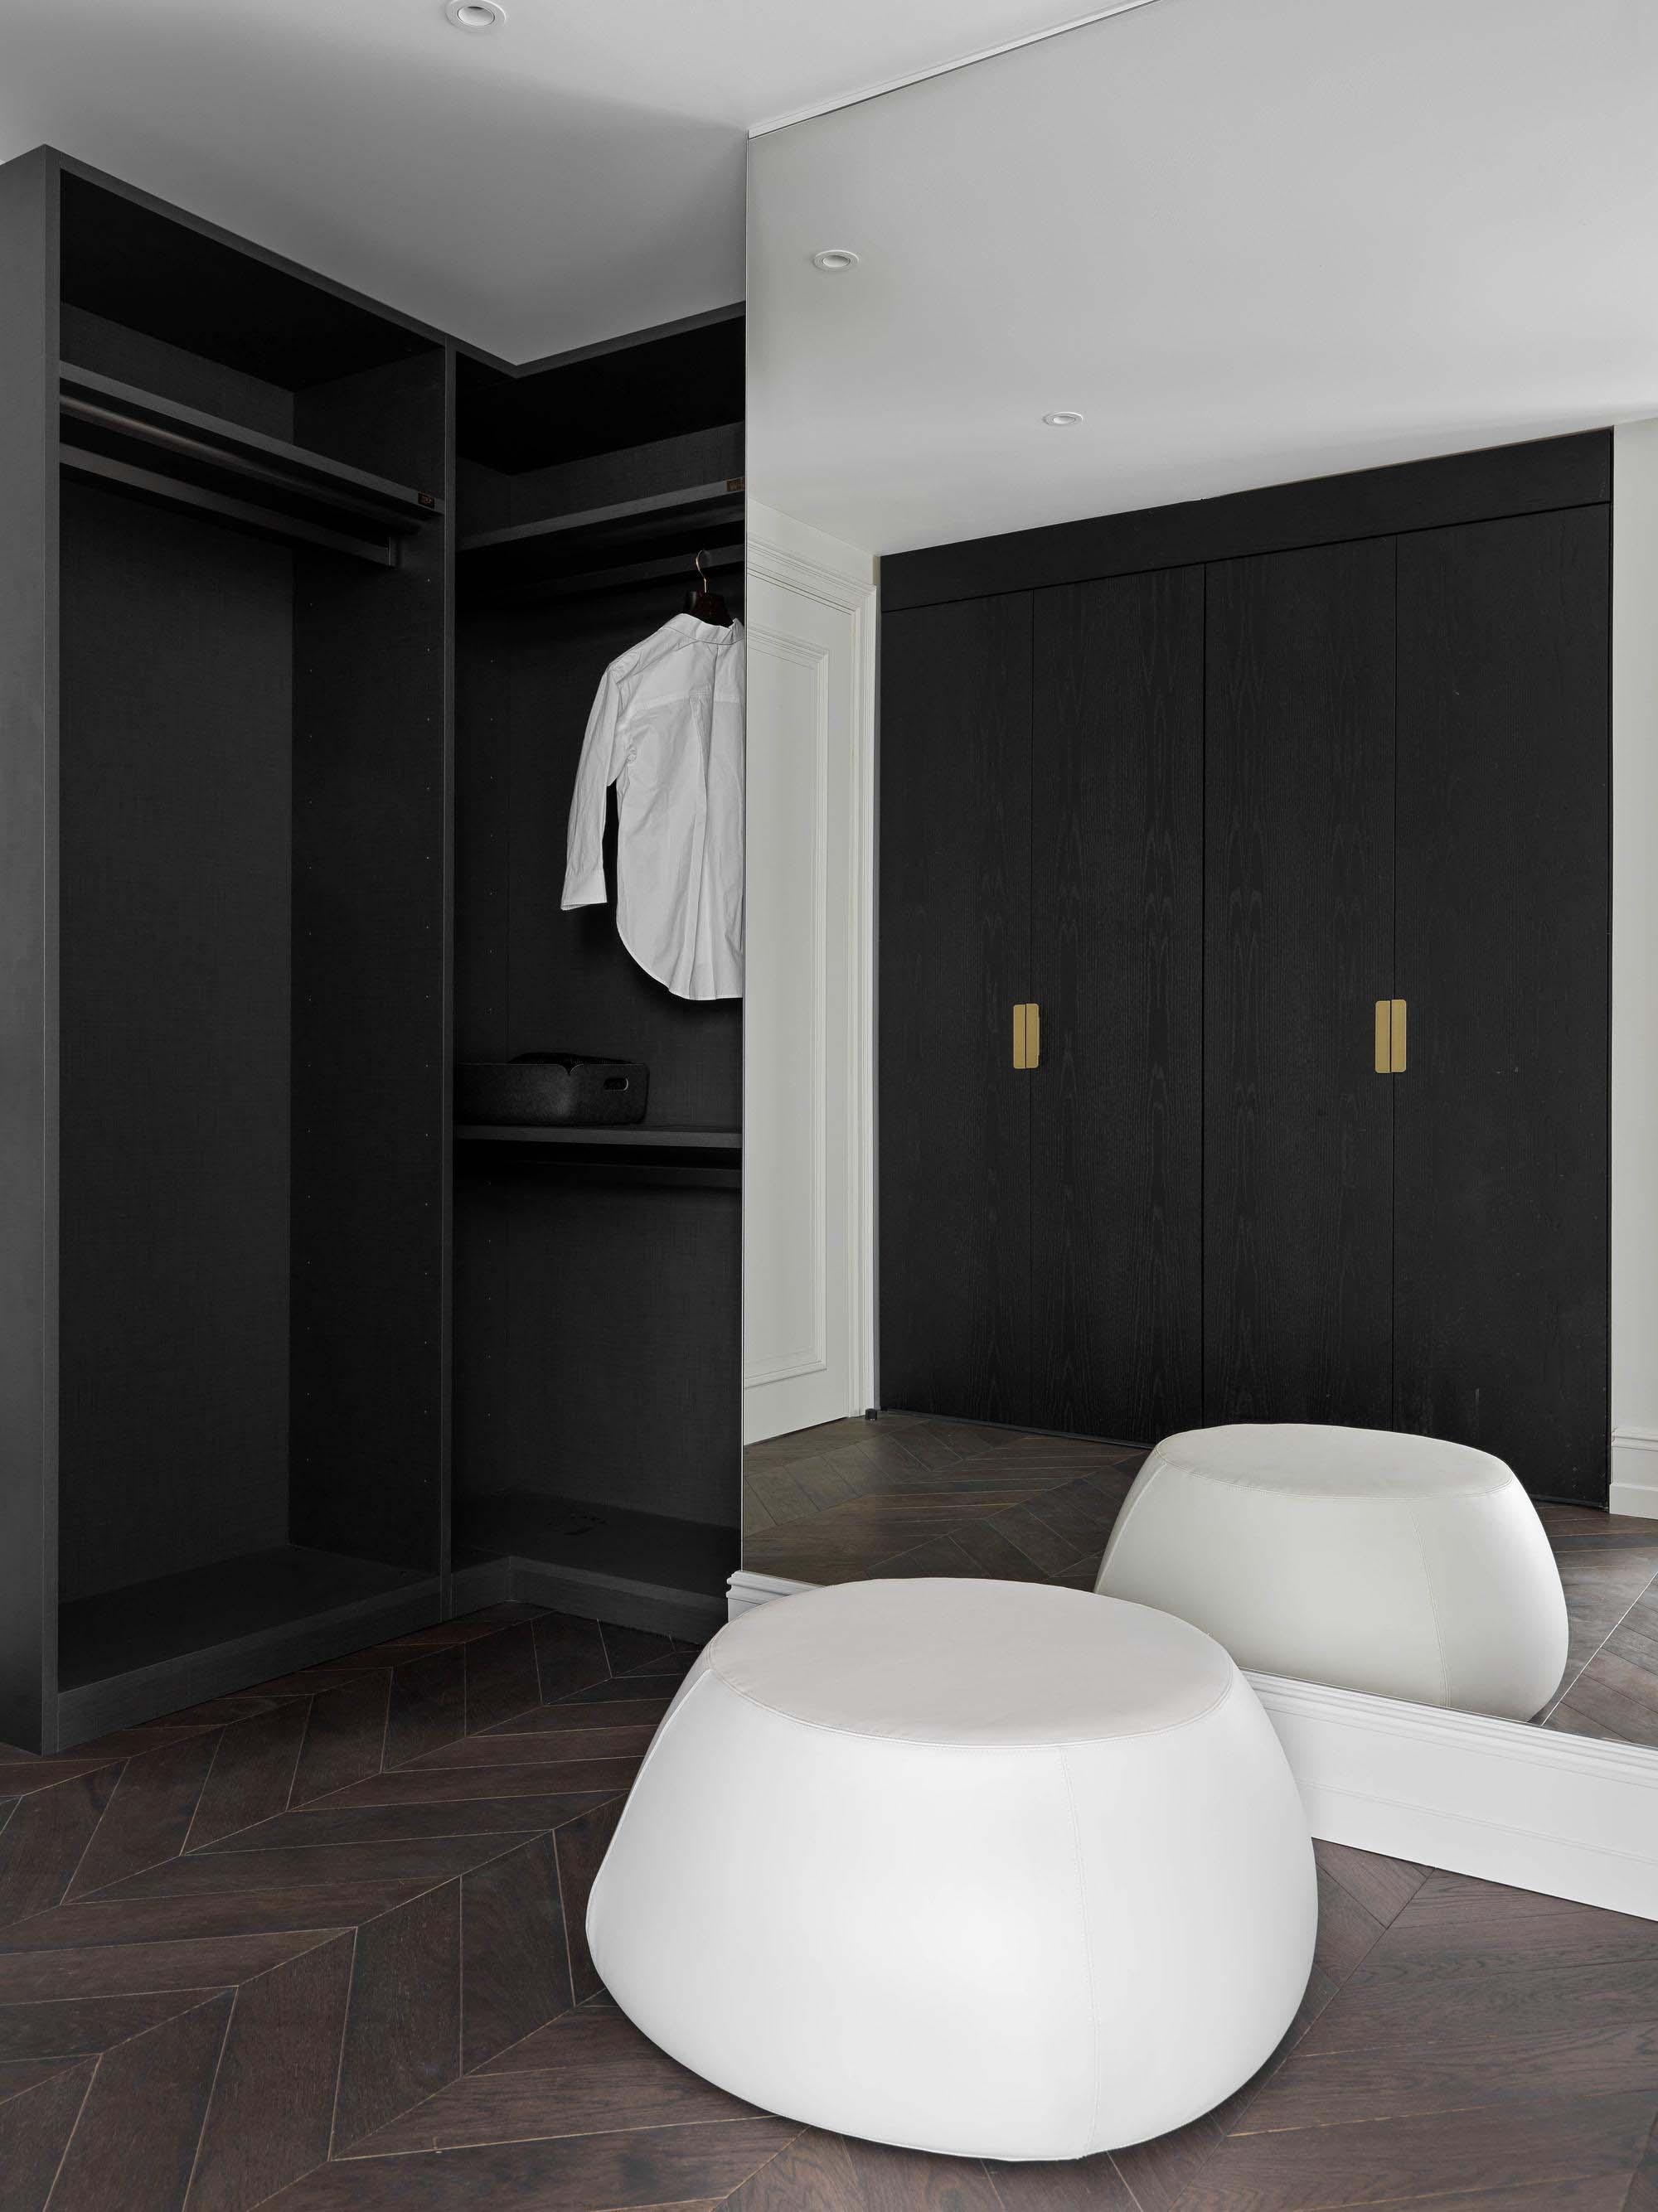 Quadro Room,大平層設計,170㎡,莫斯科,大平層裝修,輕奢風格,大平層設計案例,Quadro Room設計案例,Quadro Room作品